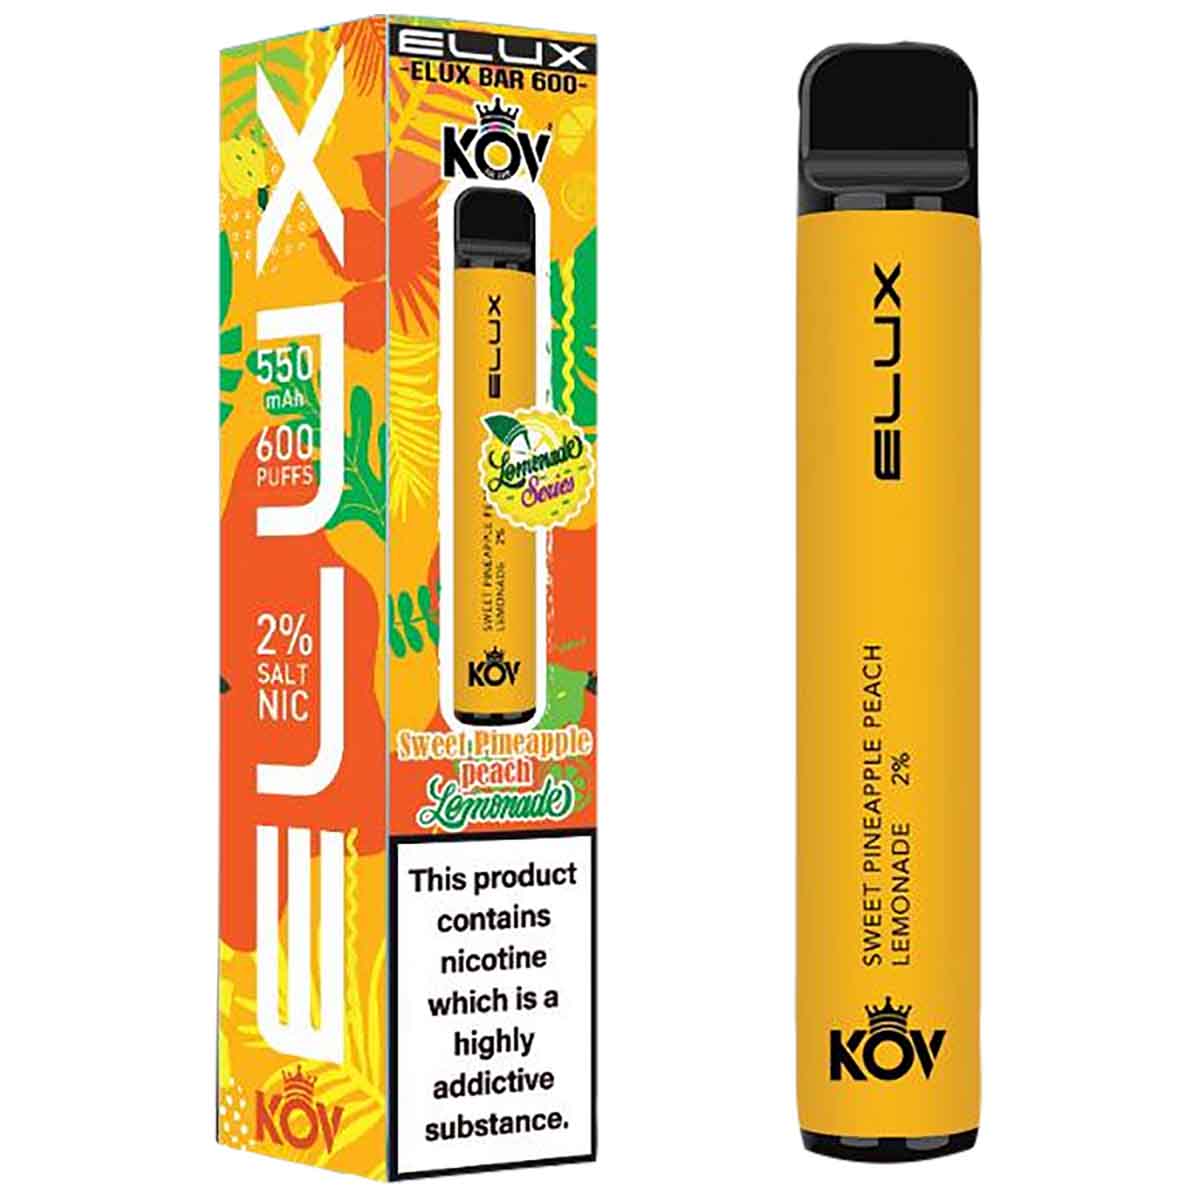 Elux Bar 600 Lemonade Range Disposable Vape Device - Sweet Pineapple Peach Lemonade